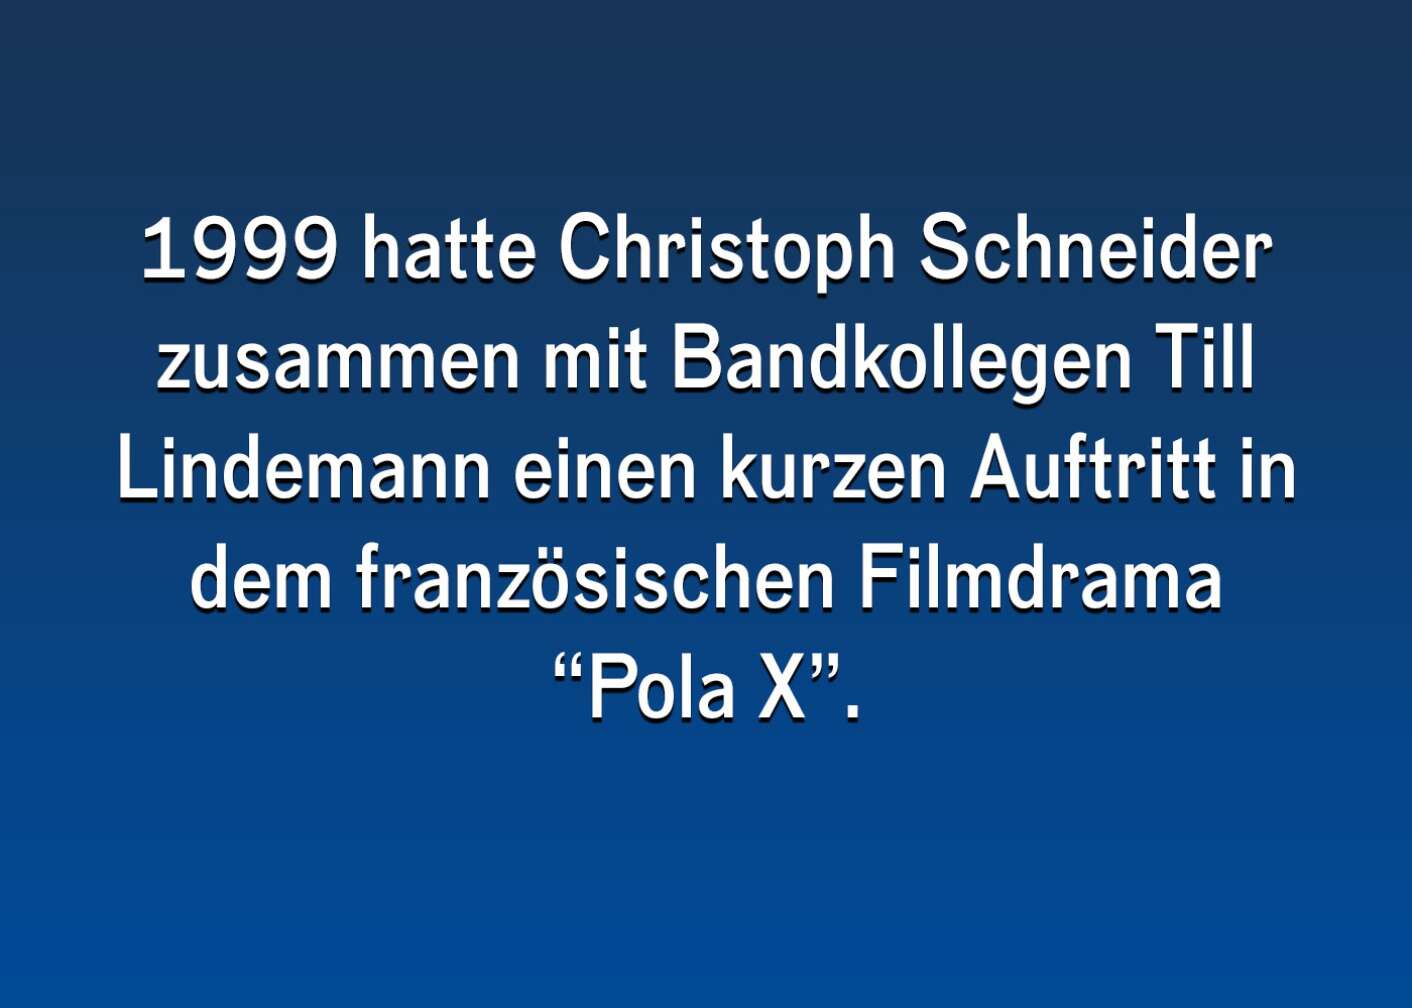 Fakten über Christoph Schneider